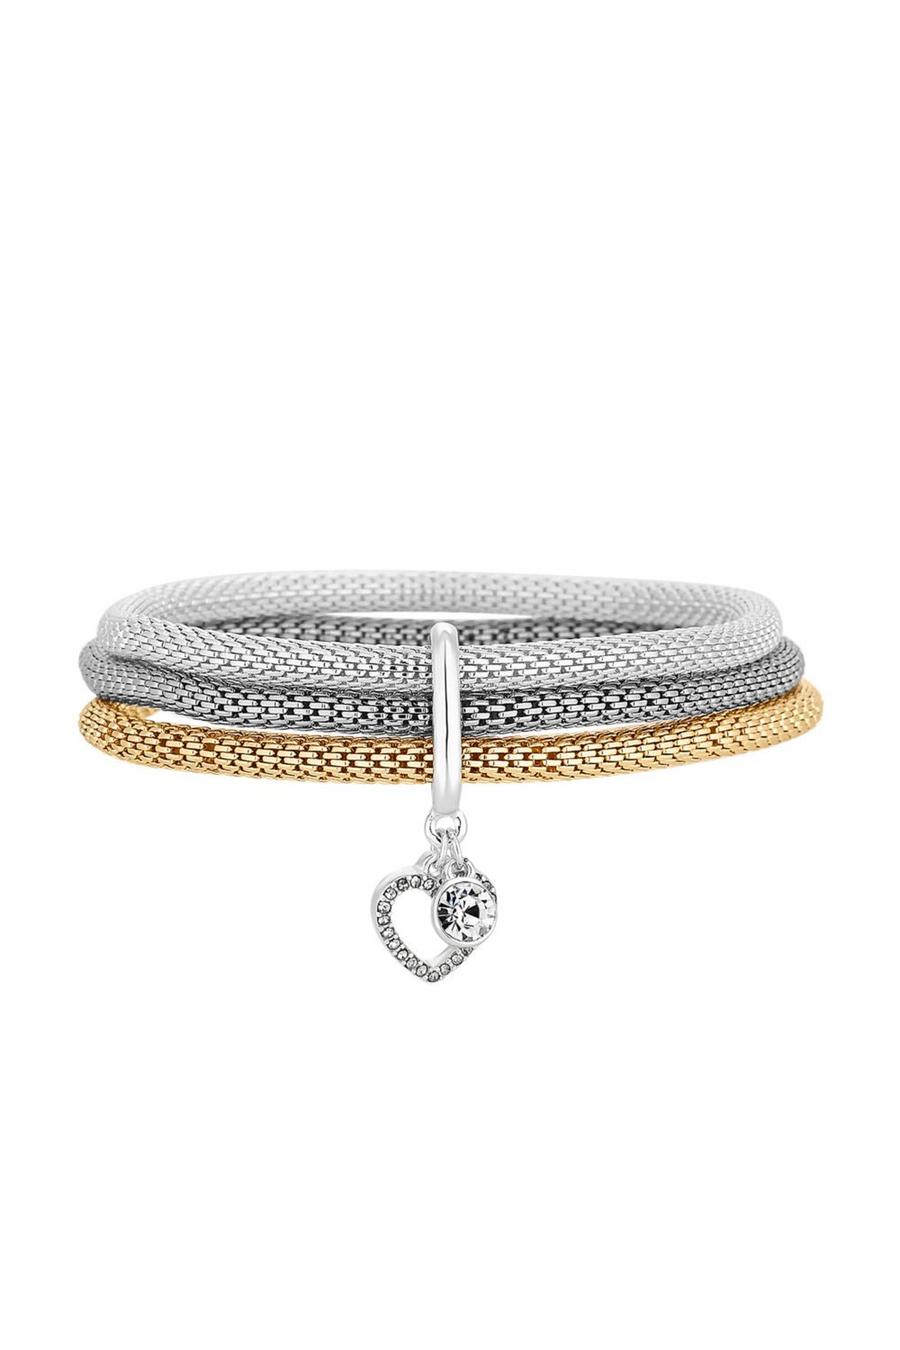 Silver and Rose Gold Mesh Stretch Bracelet Gift Set image number 1